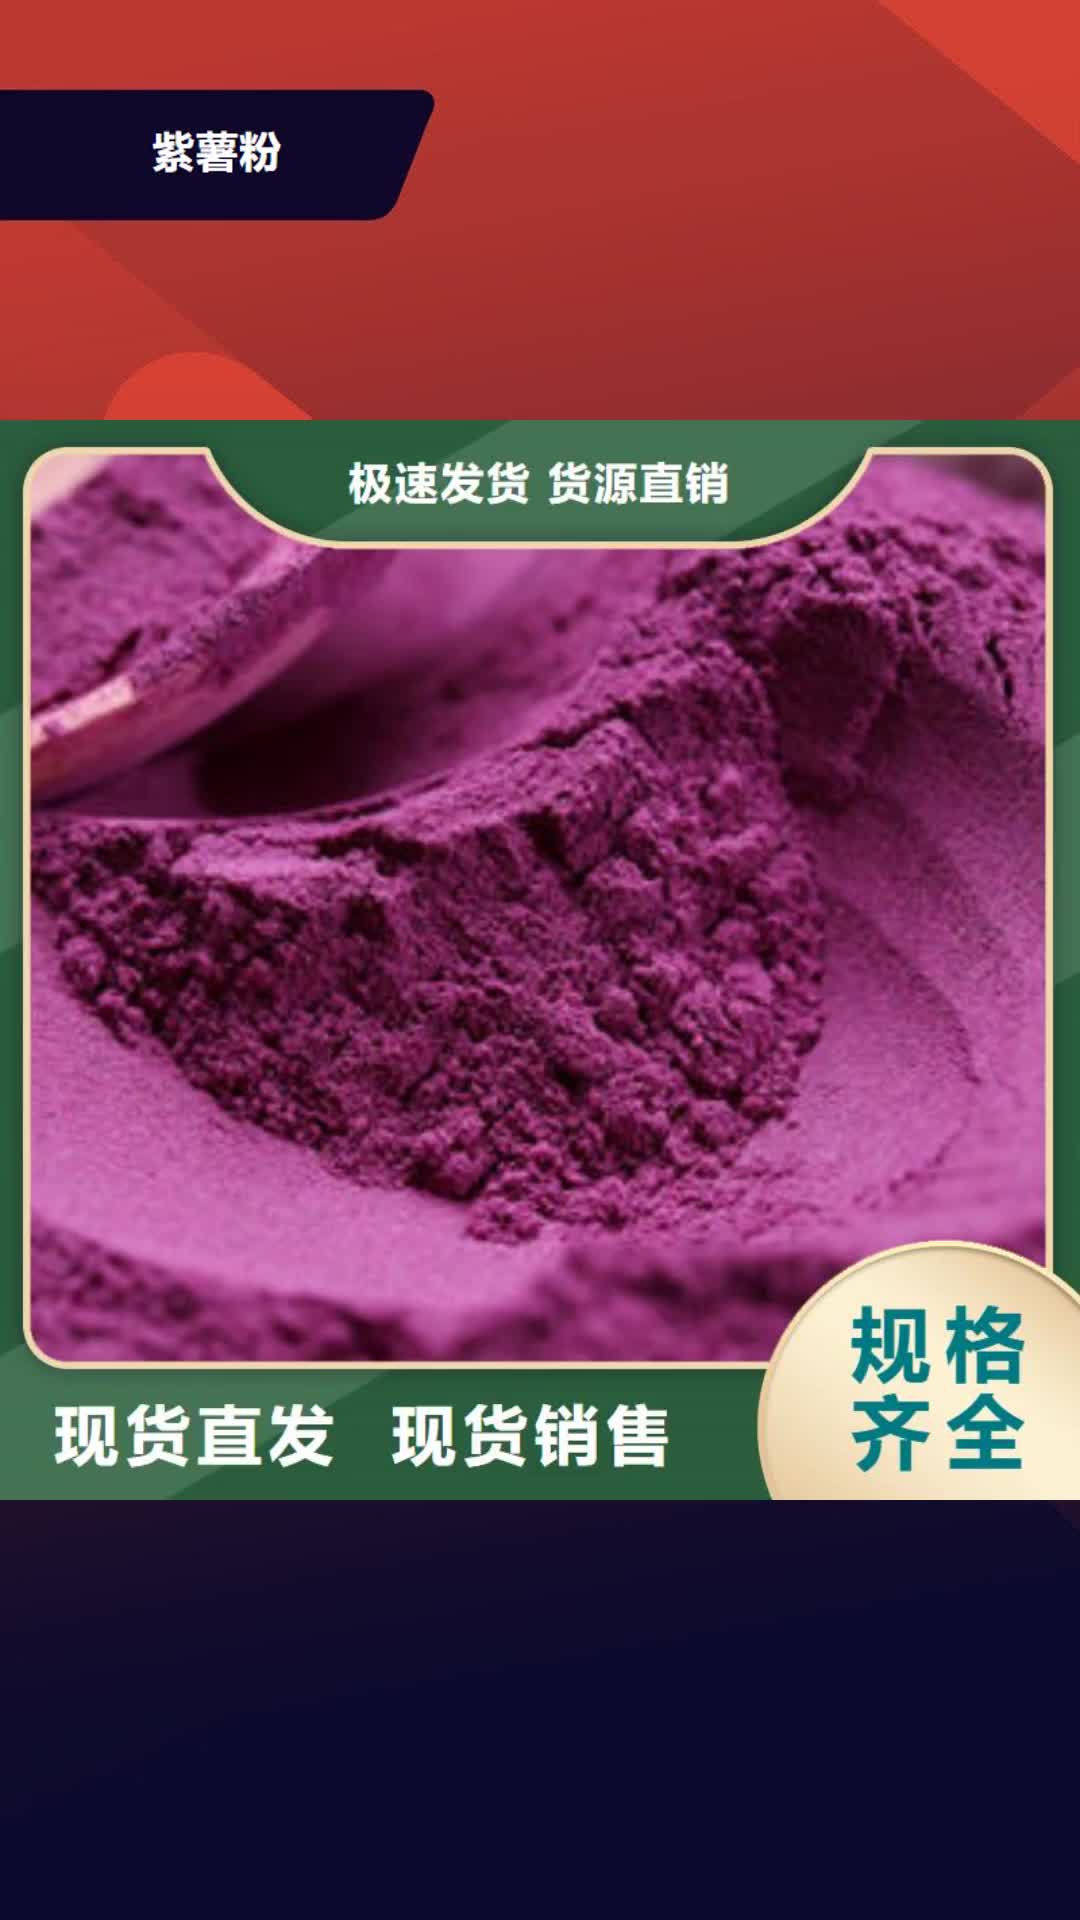 朝阳 紫薯粉专业生产团队